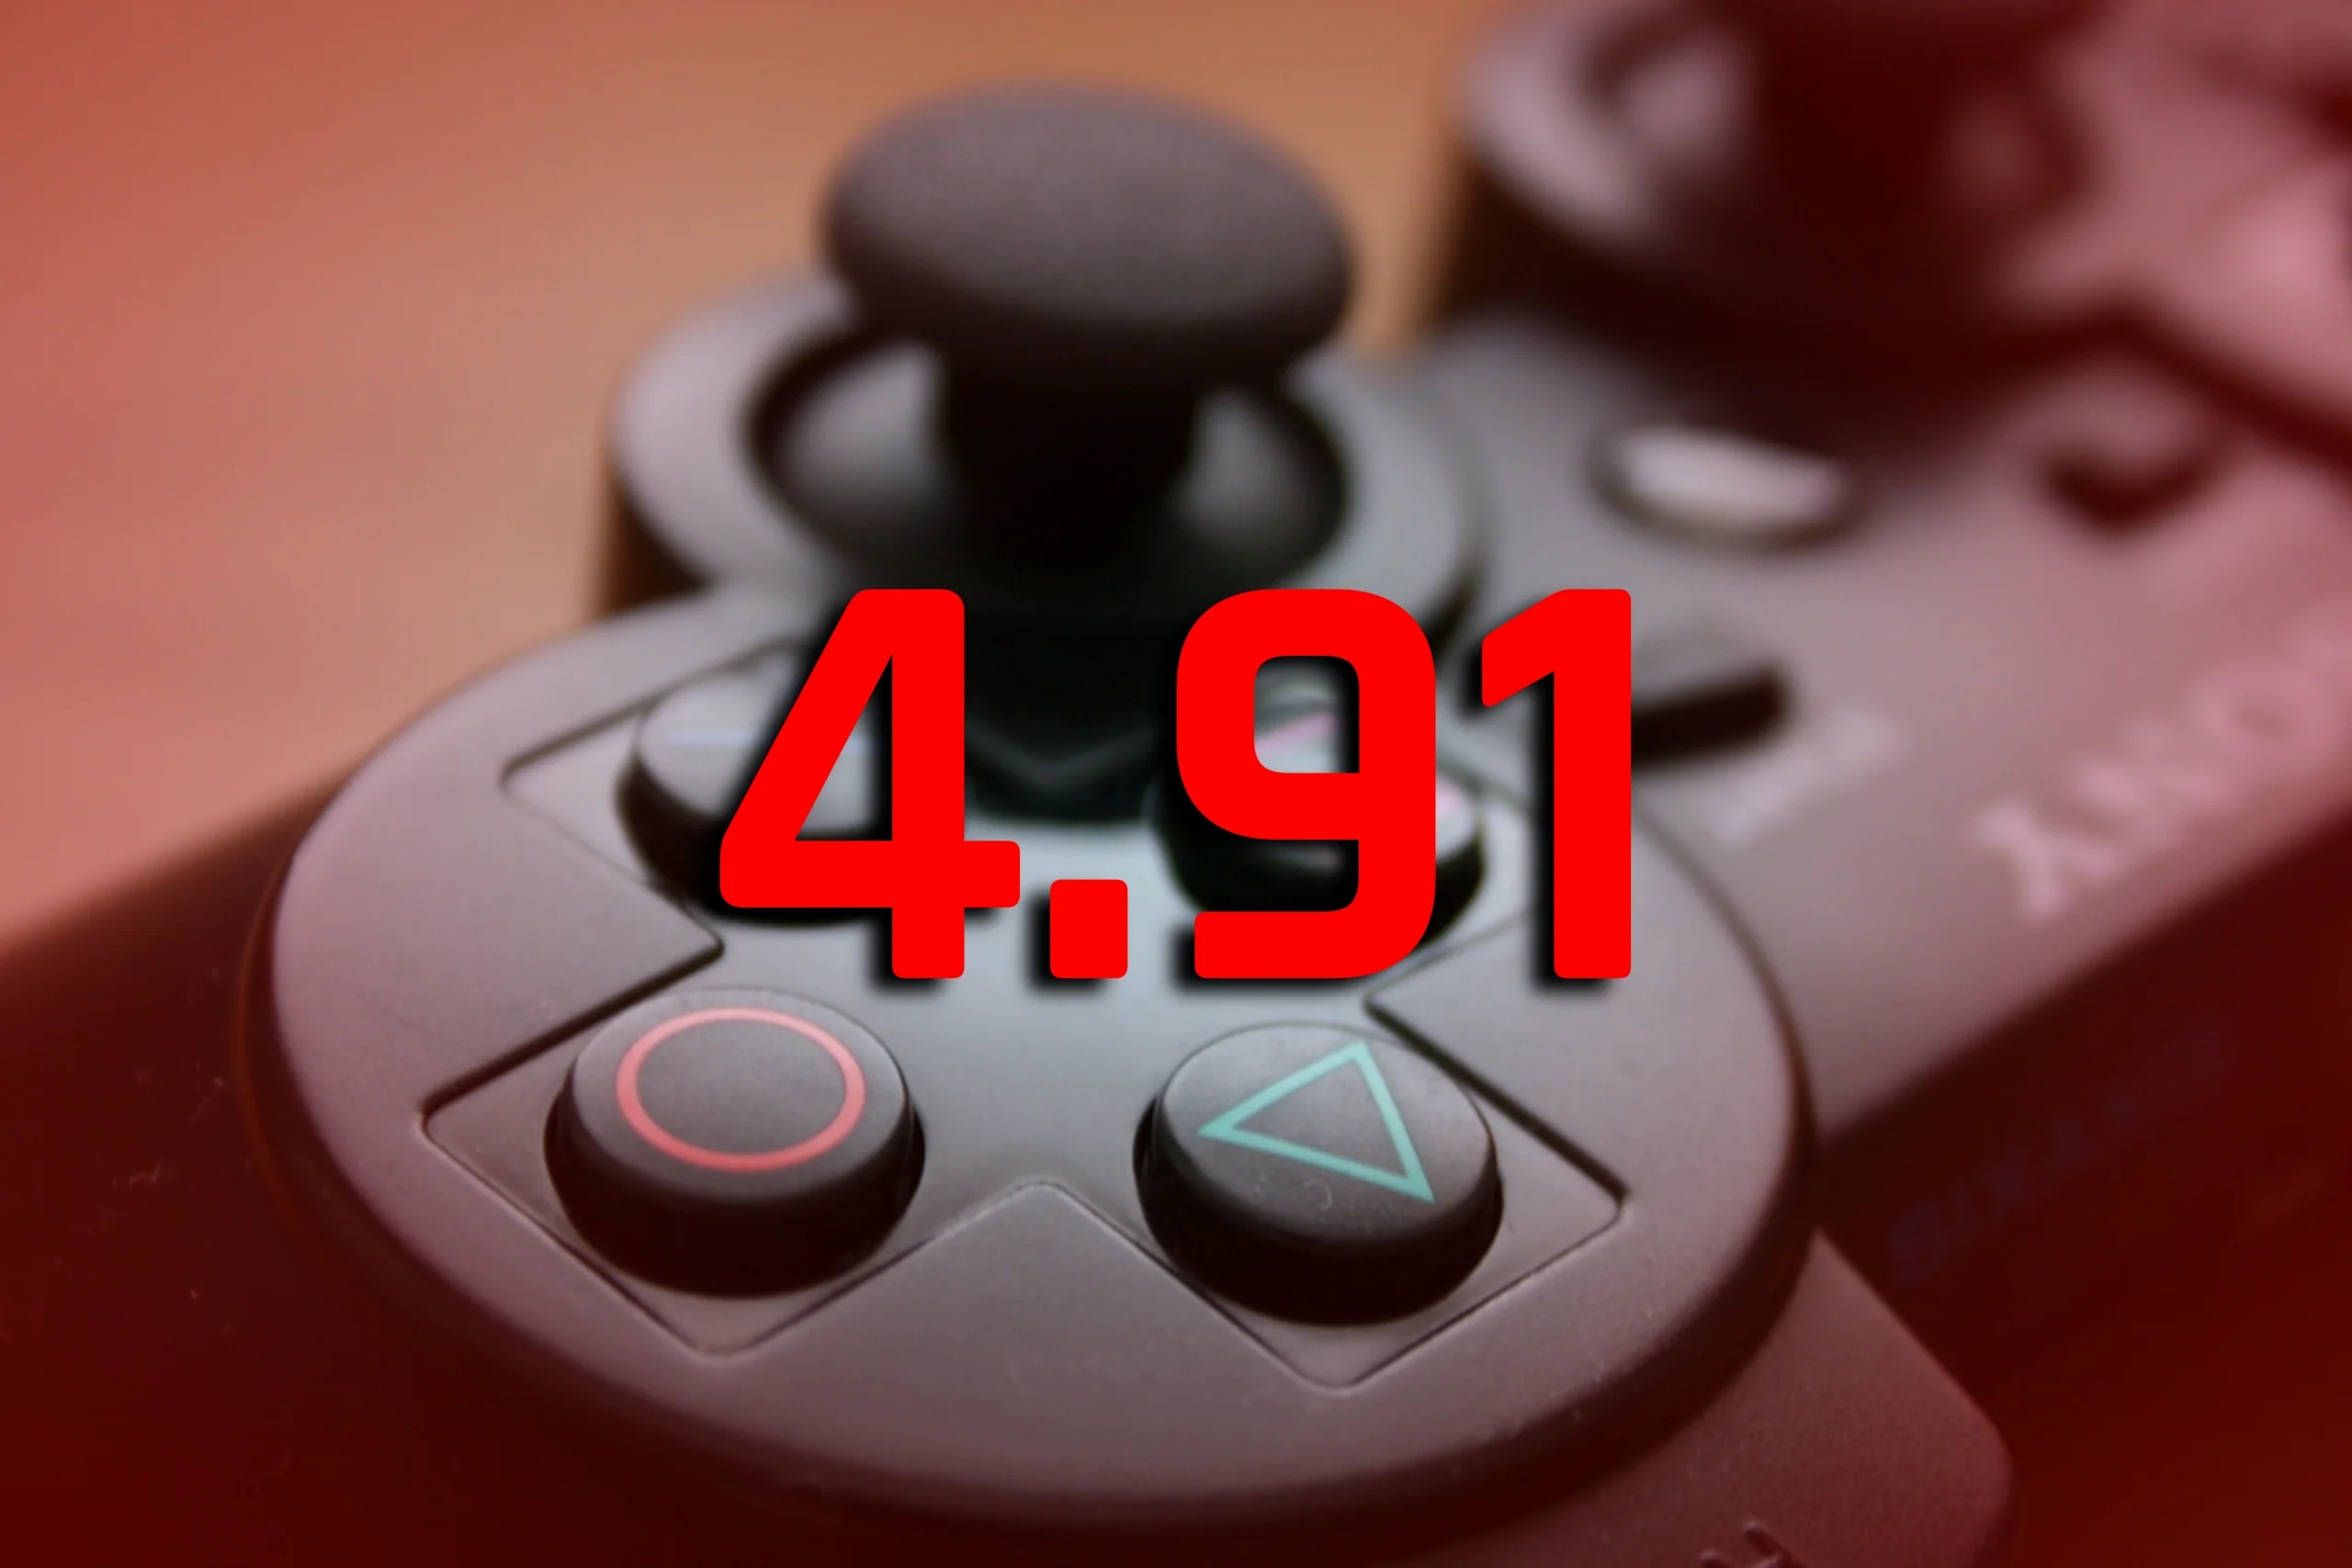 每年一更 索尼為PS3發佈新系統固件更新